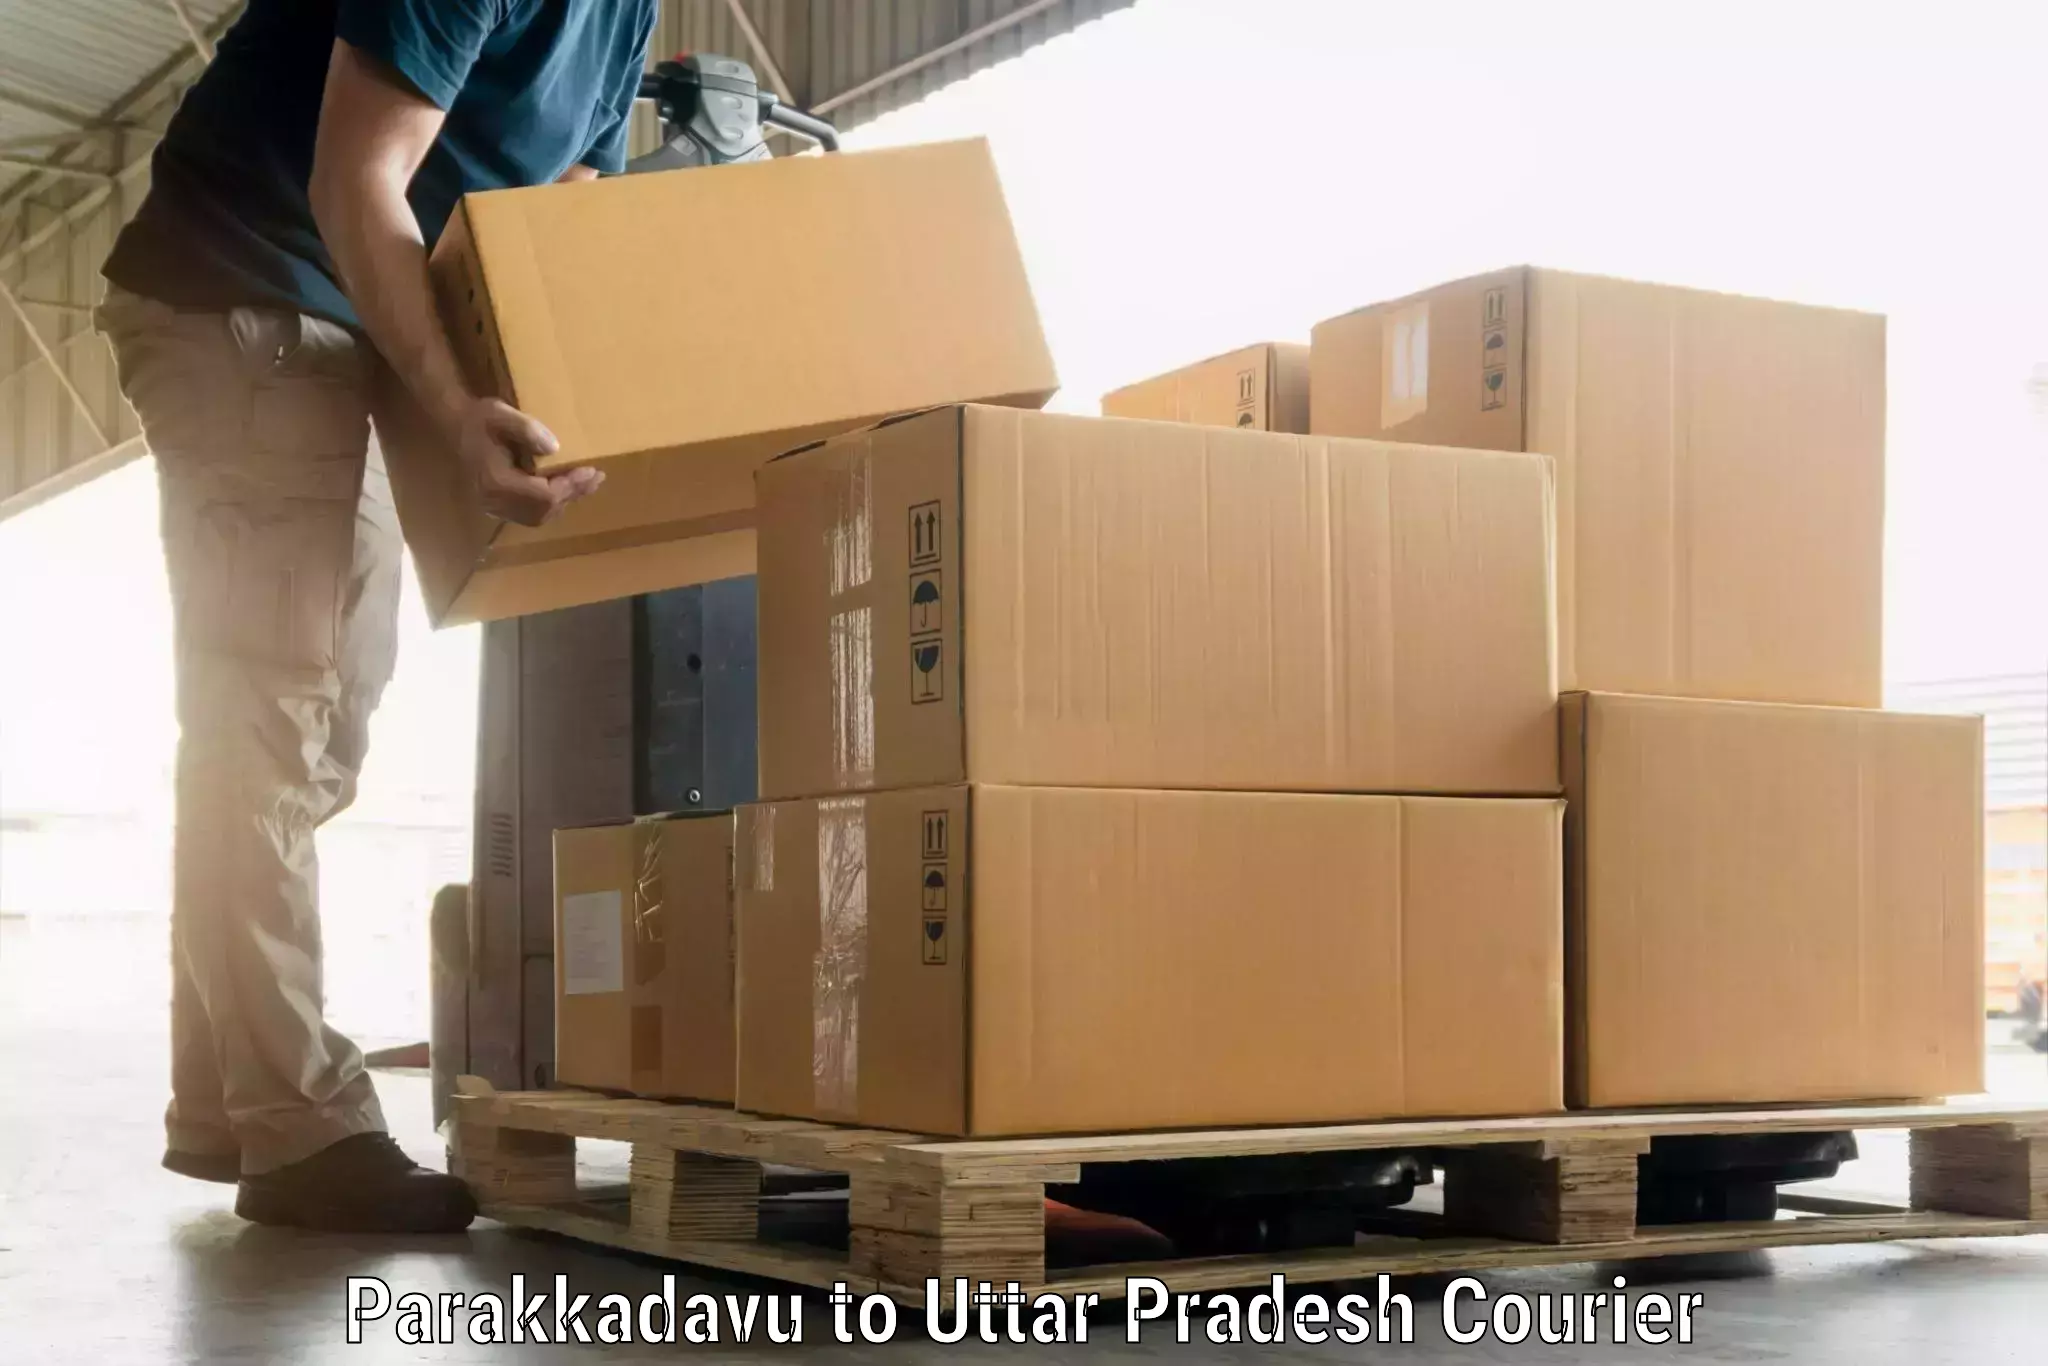 Baggage shipping service Parakkadavu to Badlapur